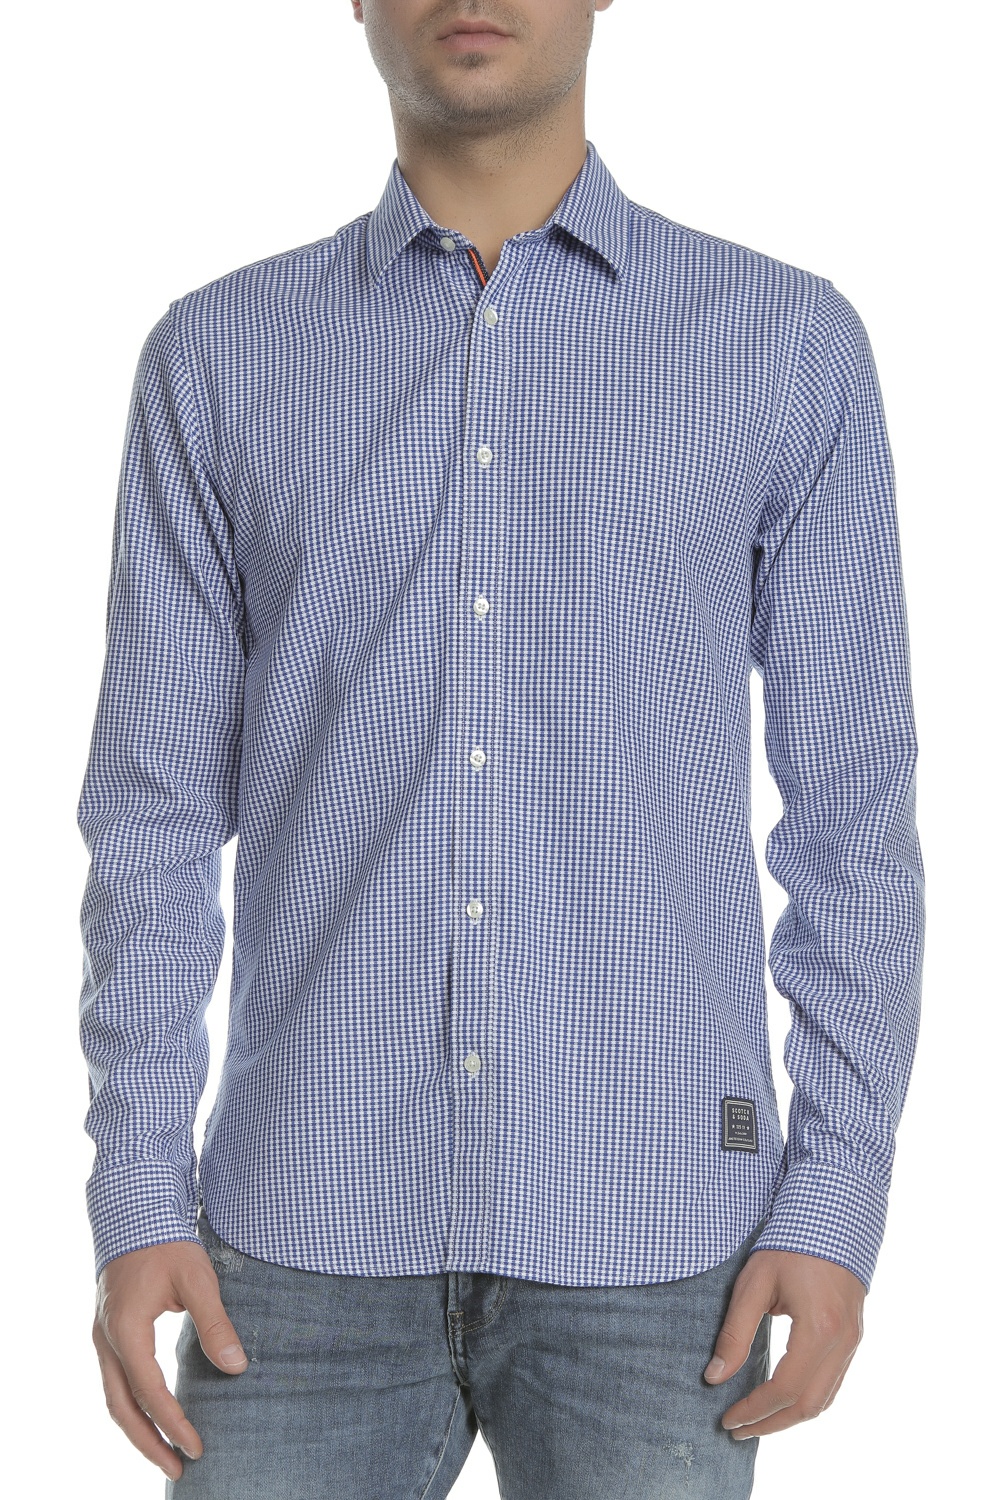 Ανδρικά/Ρούχα/Πουκάμισα/Μακρυμάνικα SCOTCH & SODA - Ανδρικό μακρυμάνικο πουκάμισο SCOTCH & SODA γαλάζιο-λευκό